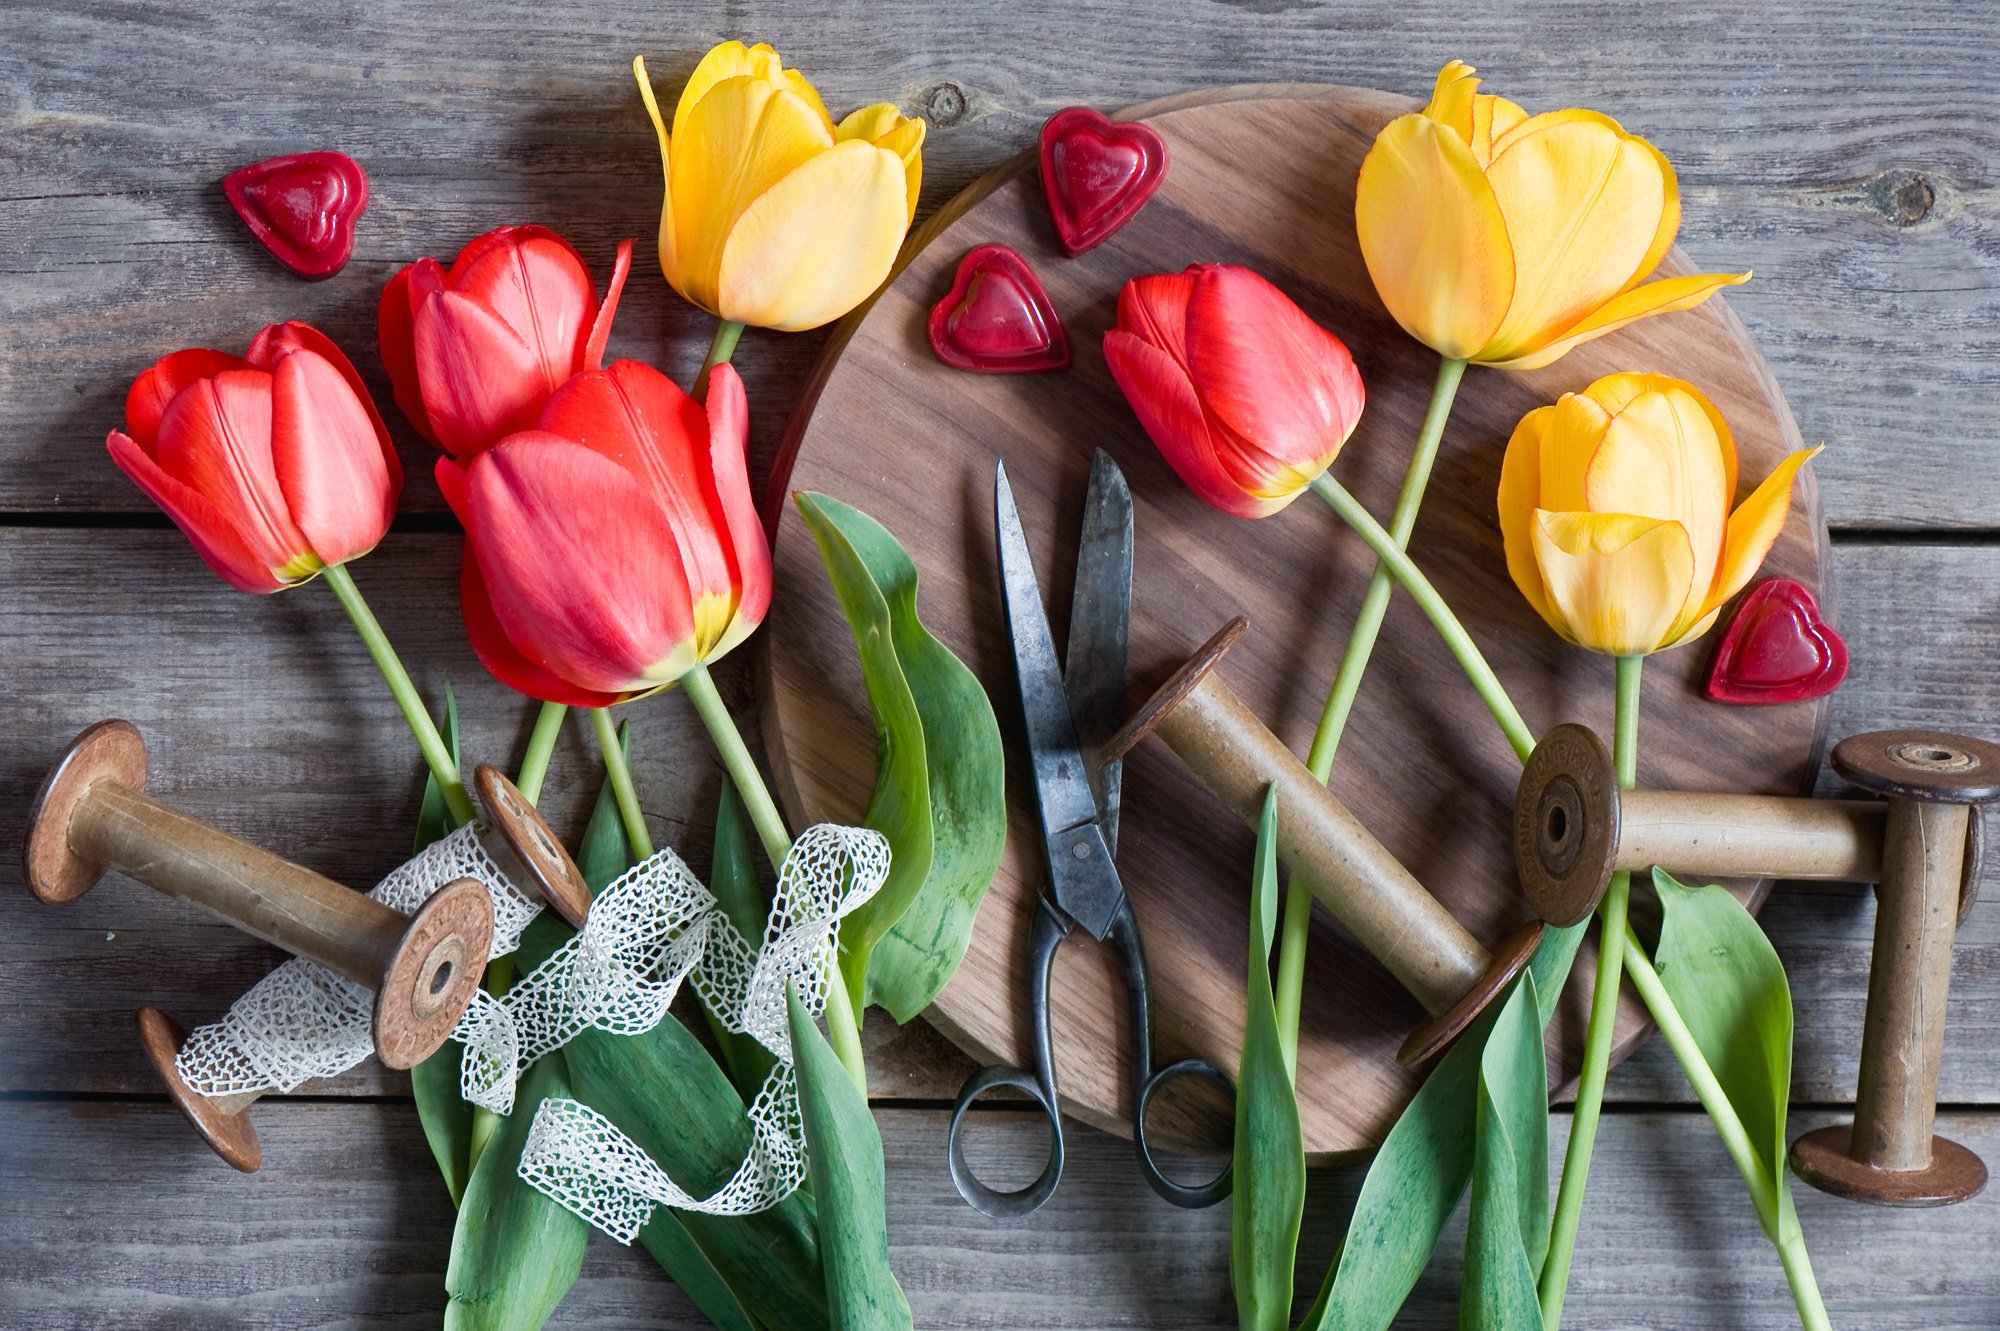 tulips, Scissors, Spools, Ribbons, Hearts Wallpaper